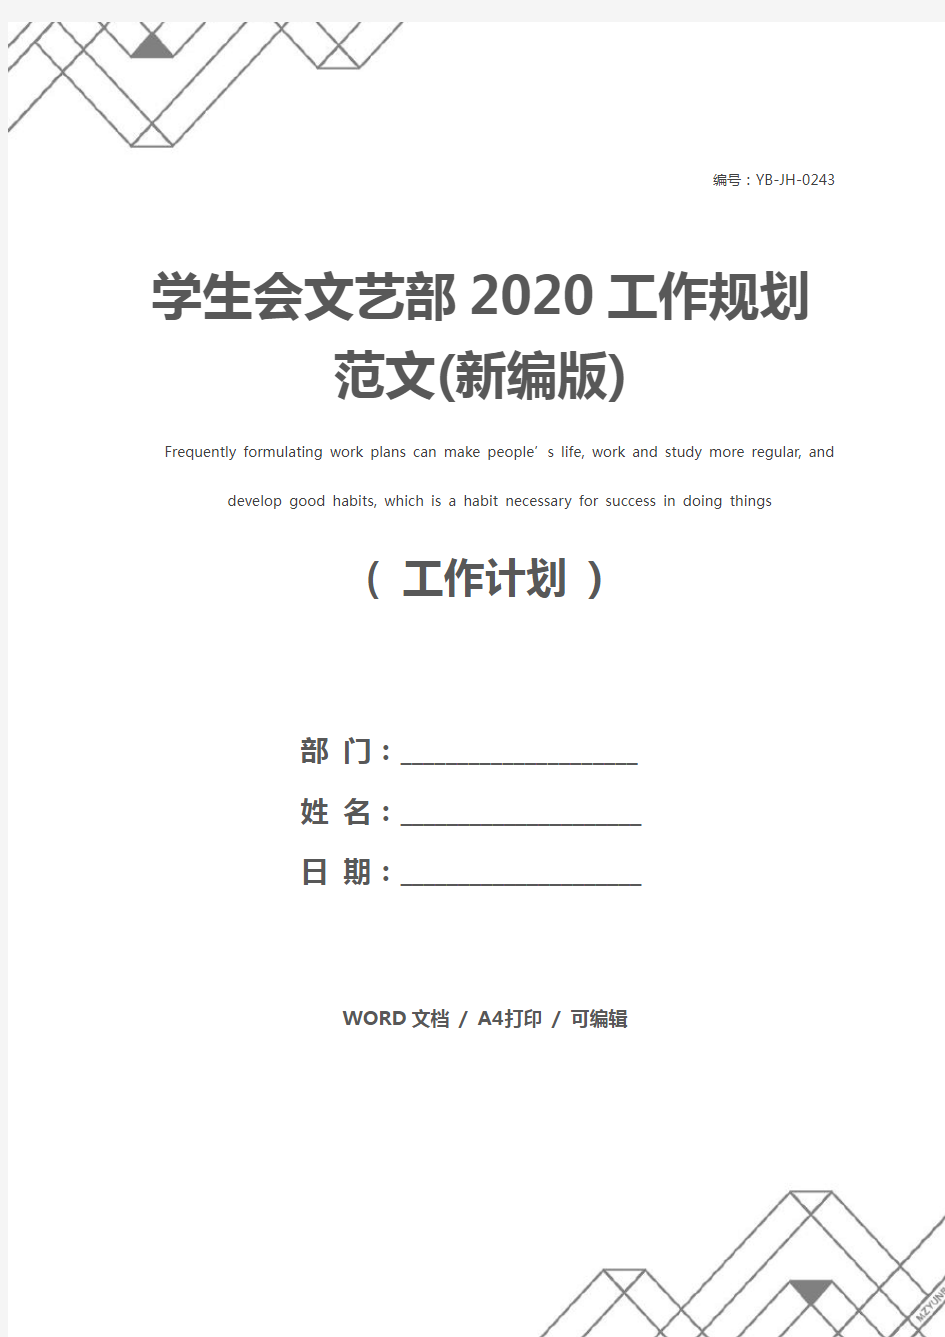 学生会文艺部2020工作规划范文(新编版)